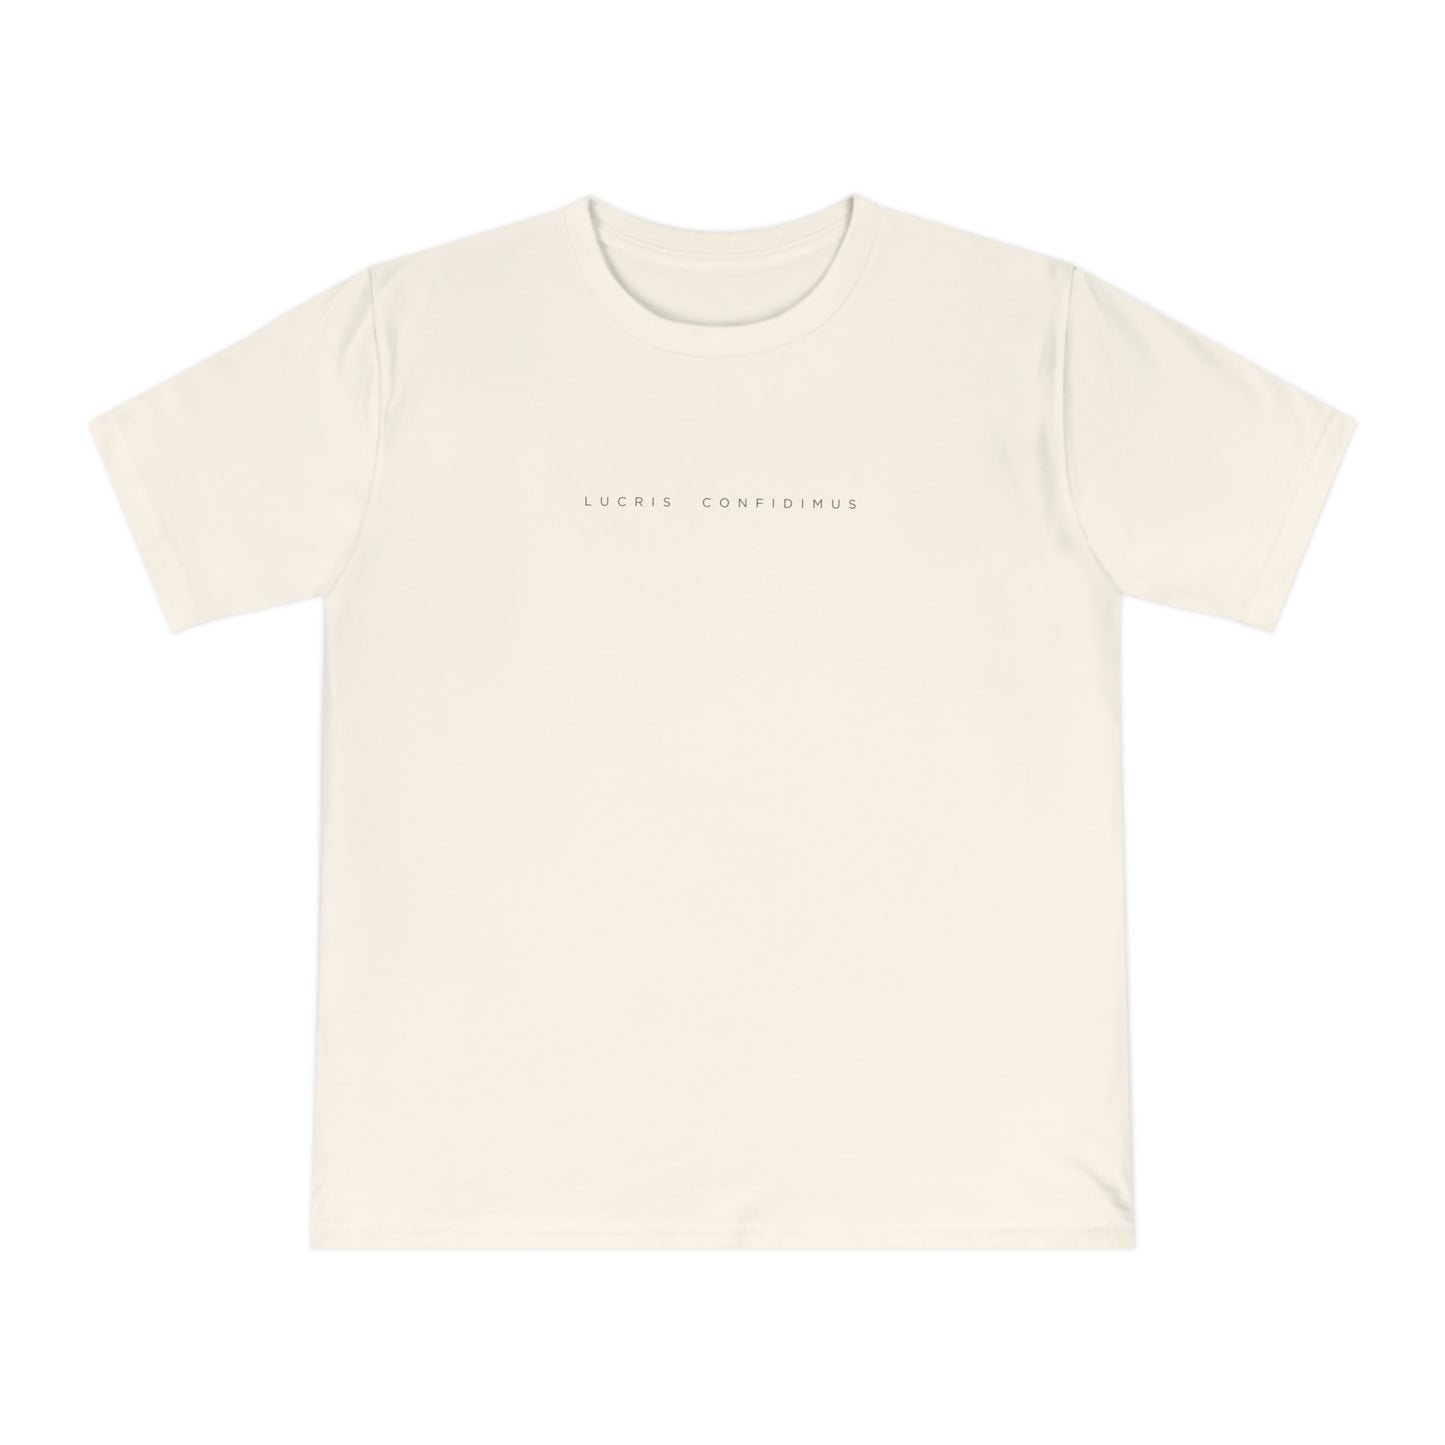 Lucris Confidimus Unisex T-Shirt